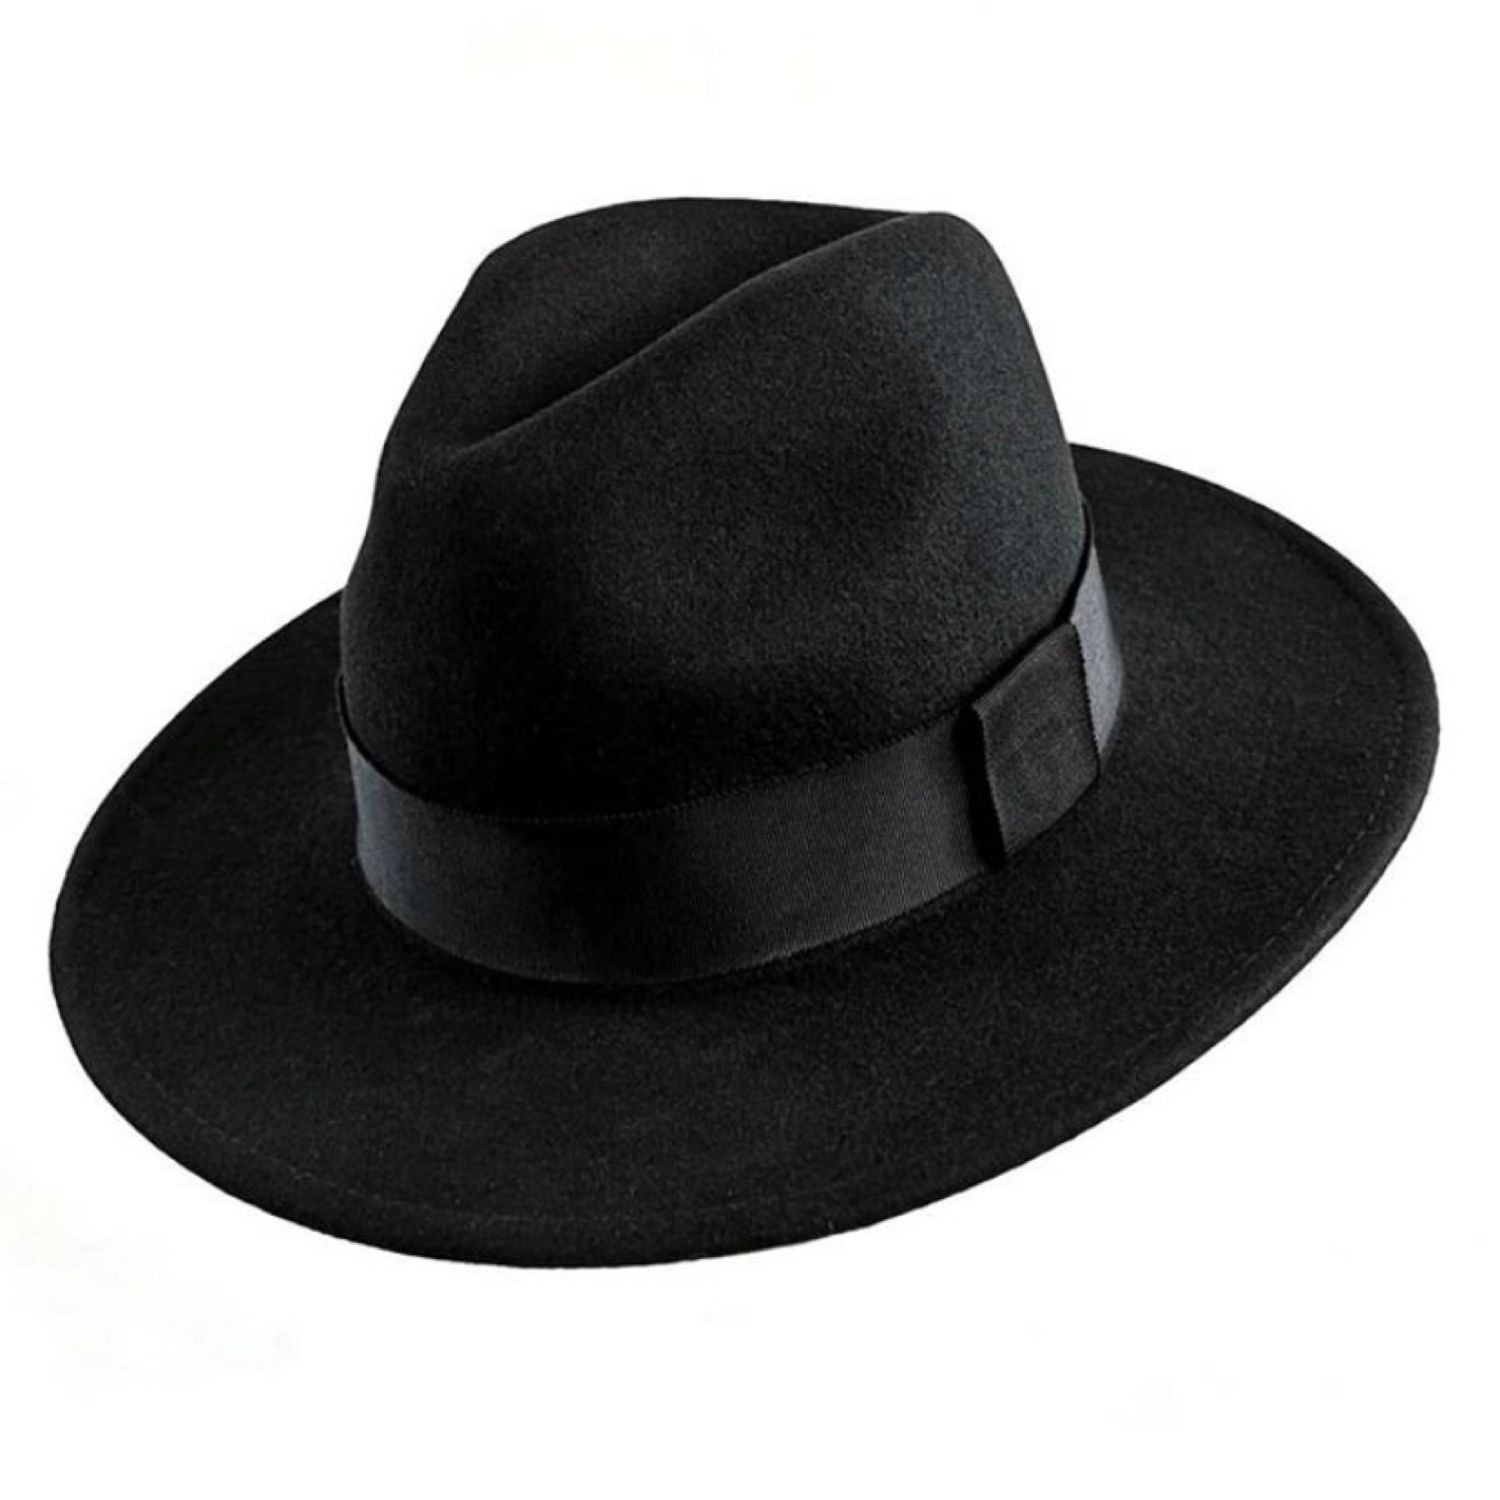 Фетровая шляпа купить москва. Феттер ткань шляпа мужская. Шляпа мужская Федора Монтгомери. Шляпа мужские валберис. Шляпа Федора мужская широкополая.